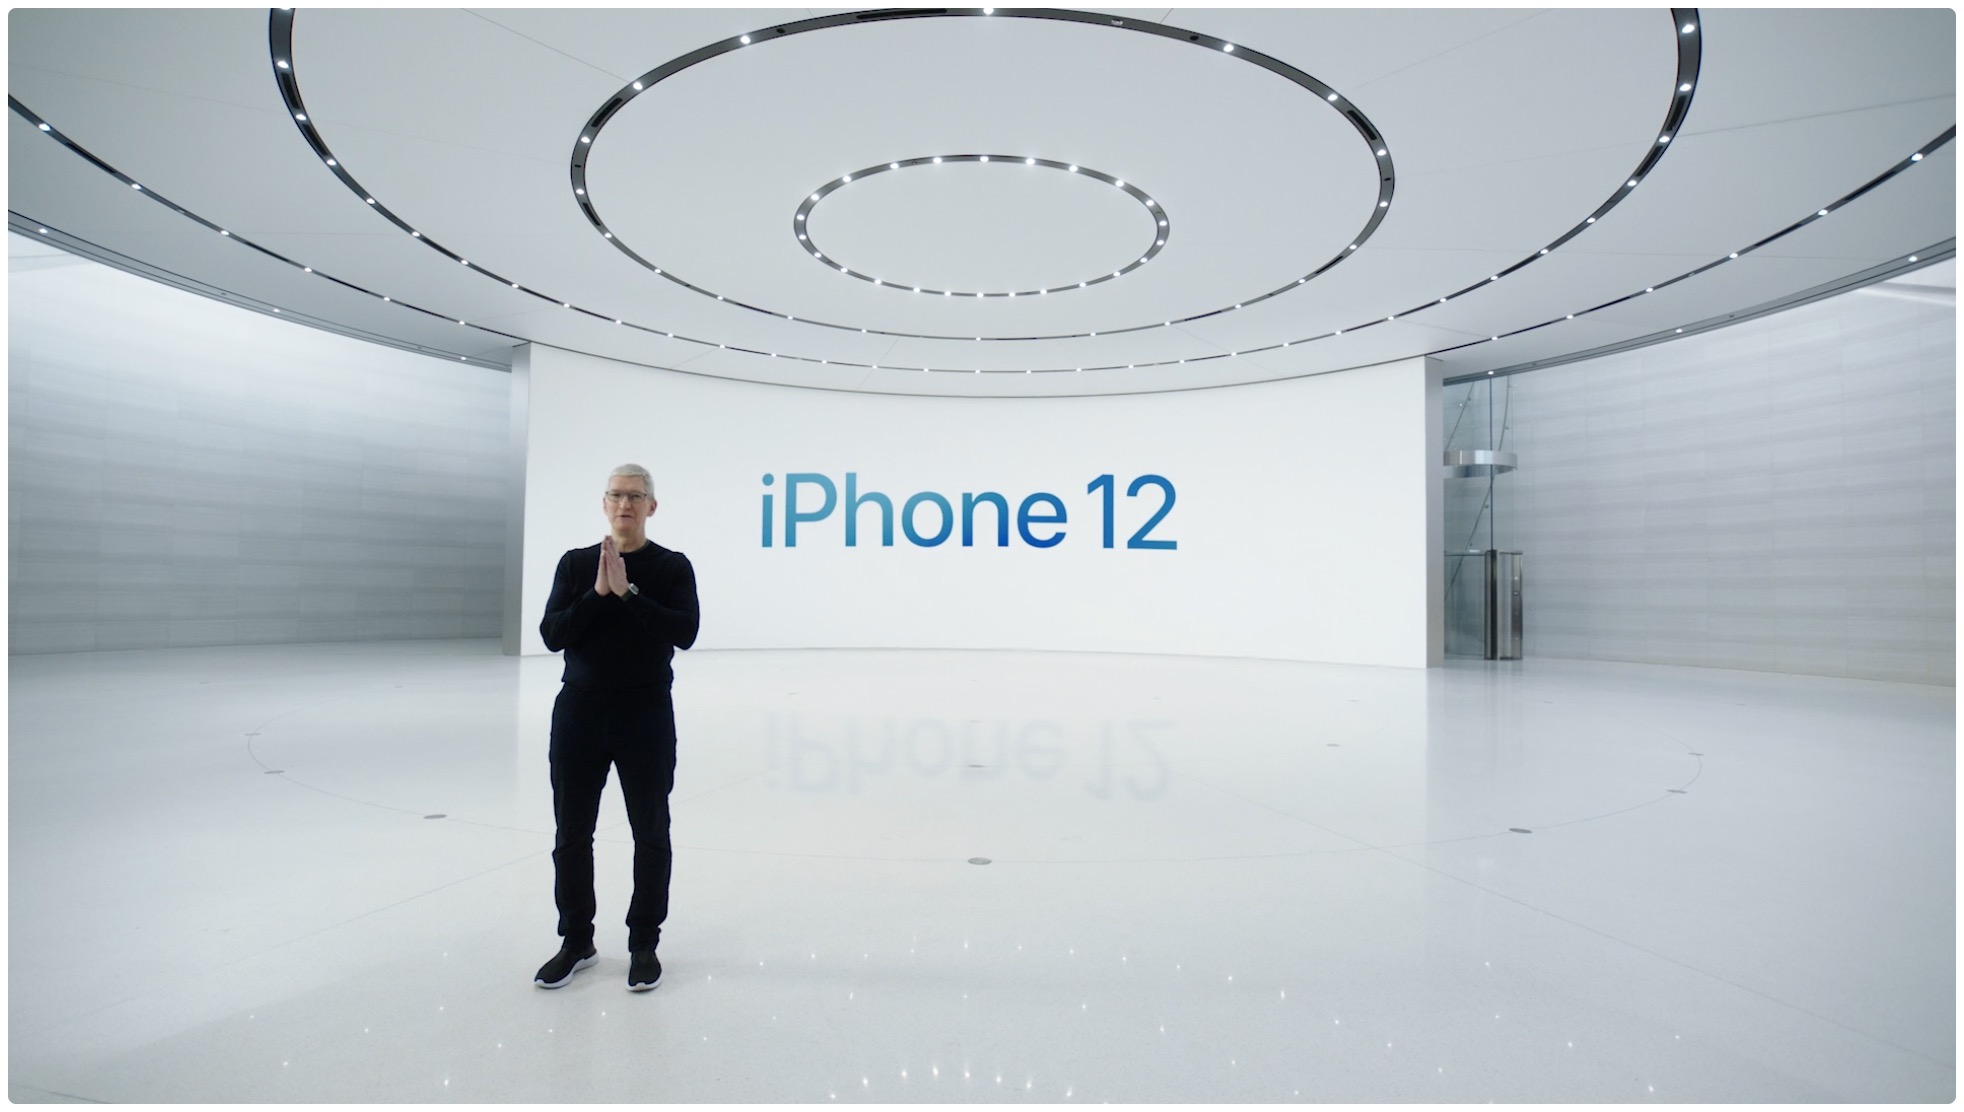 Icone iPhone 5G - immagine eroe